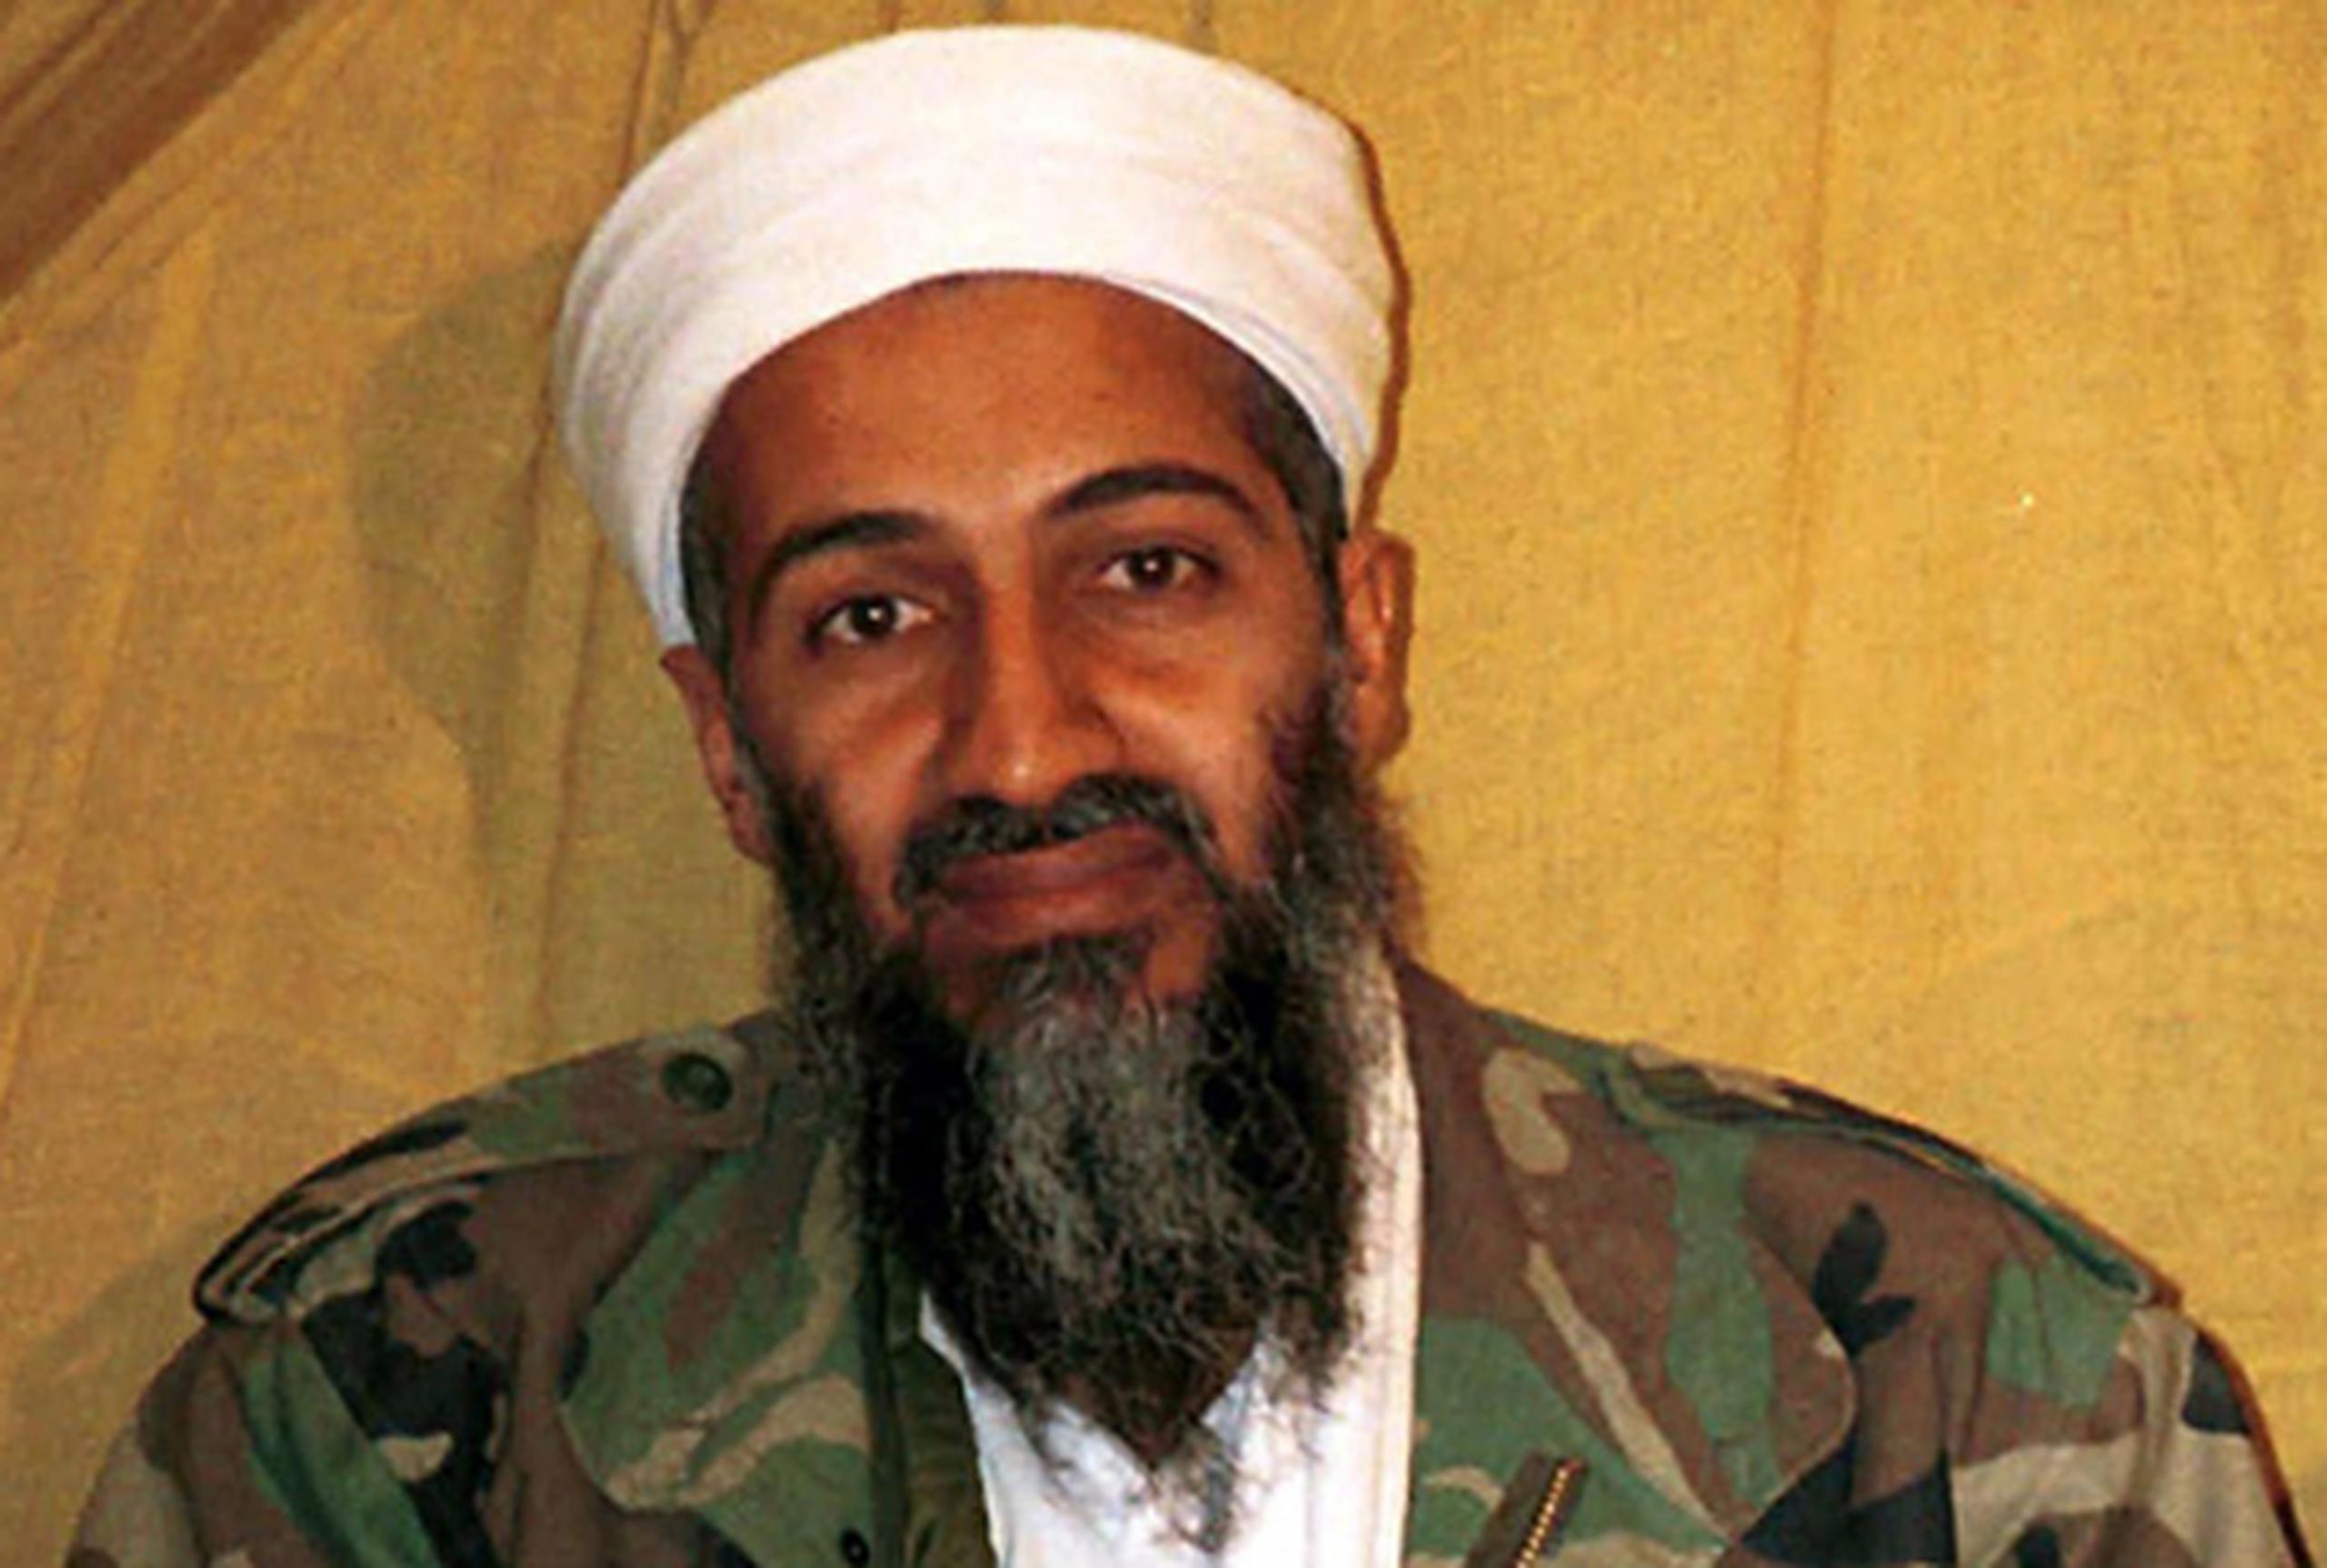 El cadáver de Osama bin Laden fue lavado, envuelto en una sábana blanca y después colocado en una bolsa.(AP Photo)